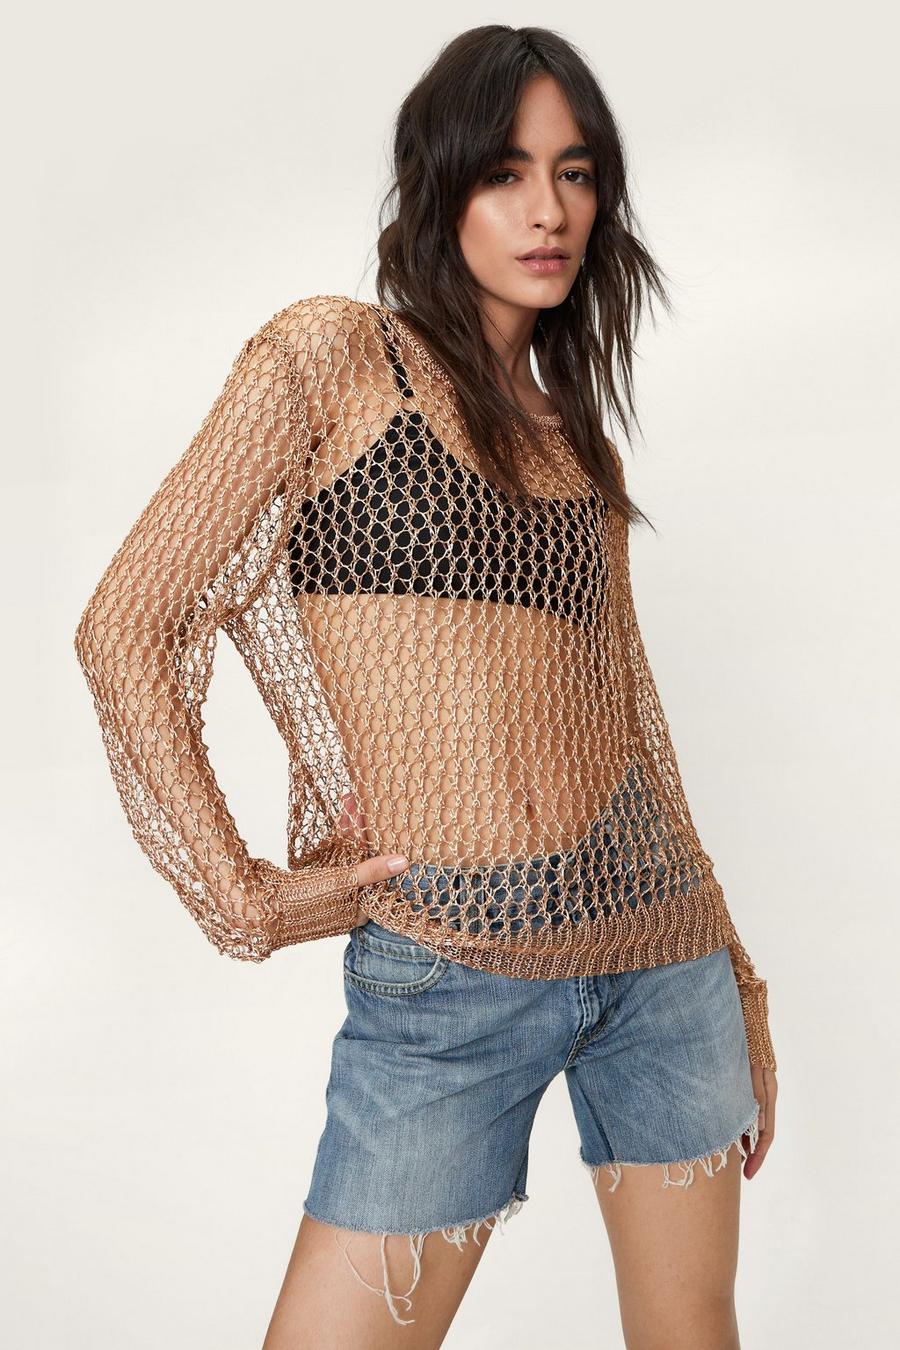 Metallic Yarn Knitted Loose Fit Sweater